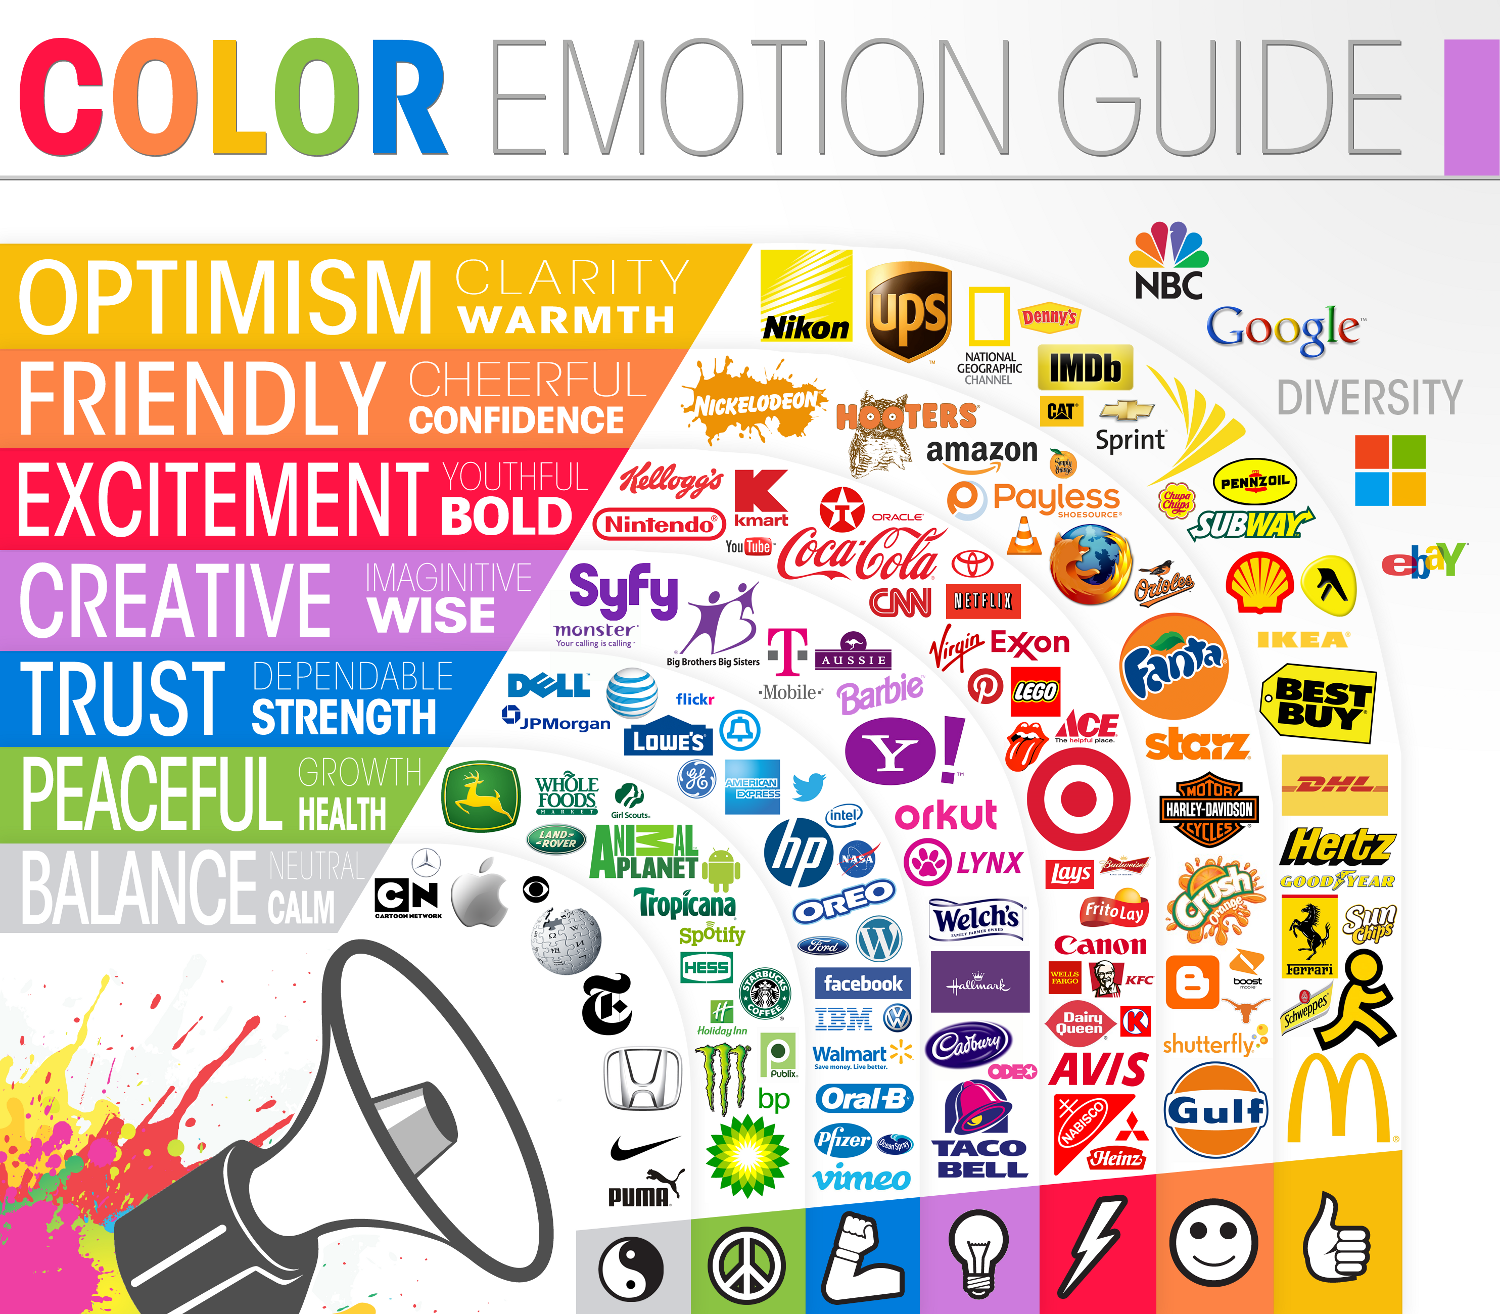 Color_guide